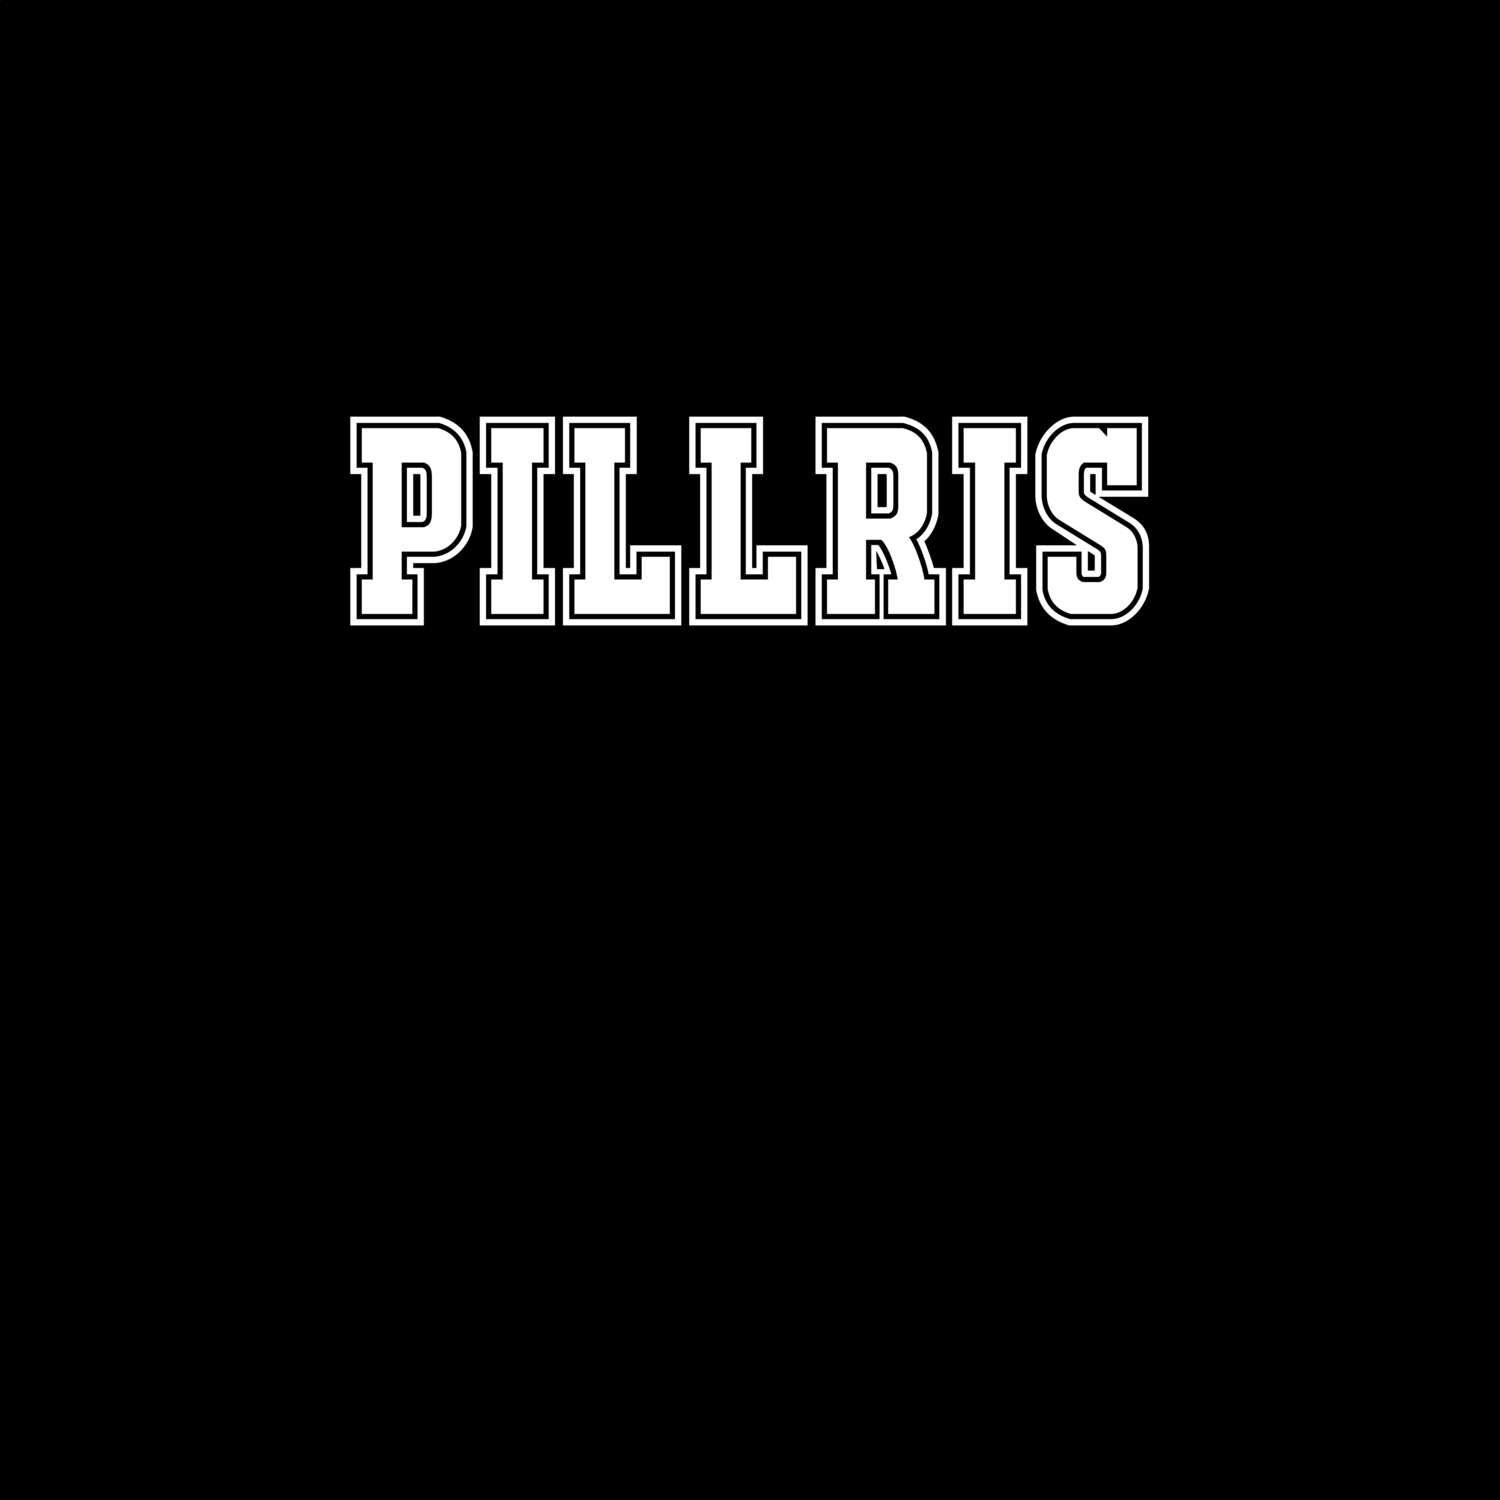 Pillris T-Shirt »Classic«